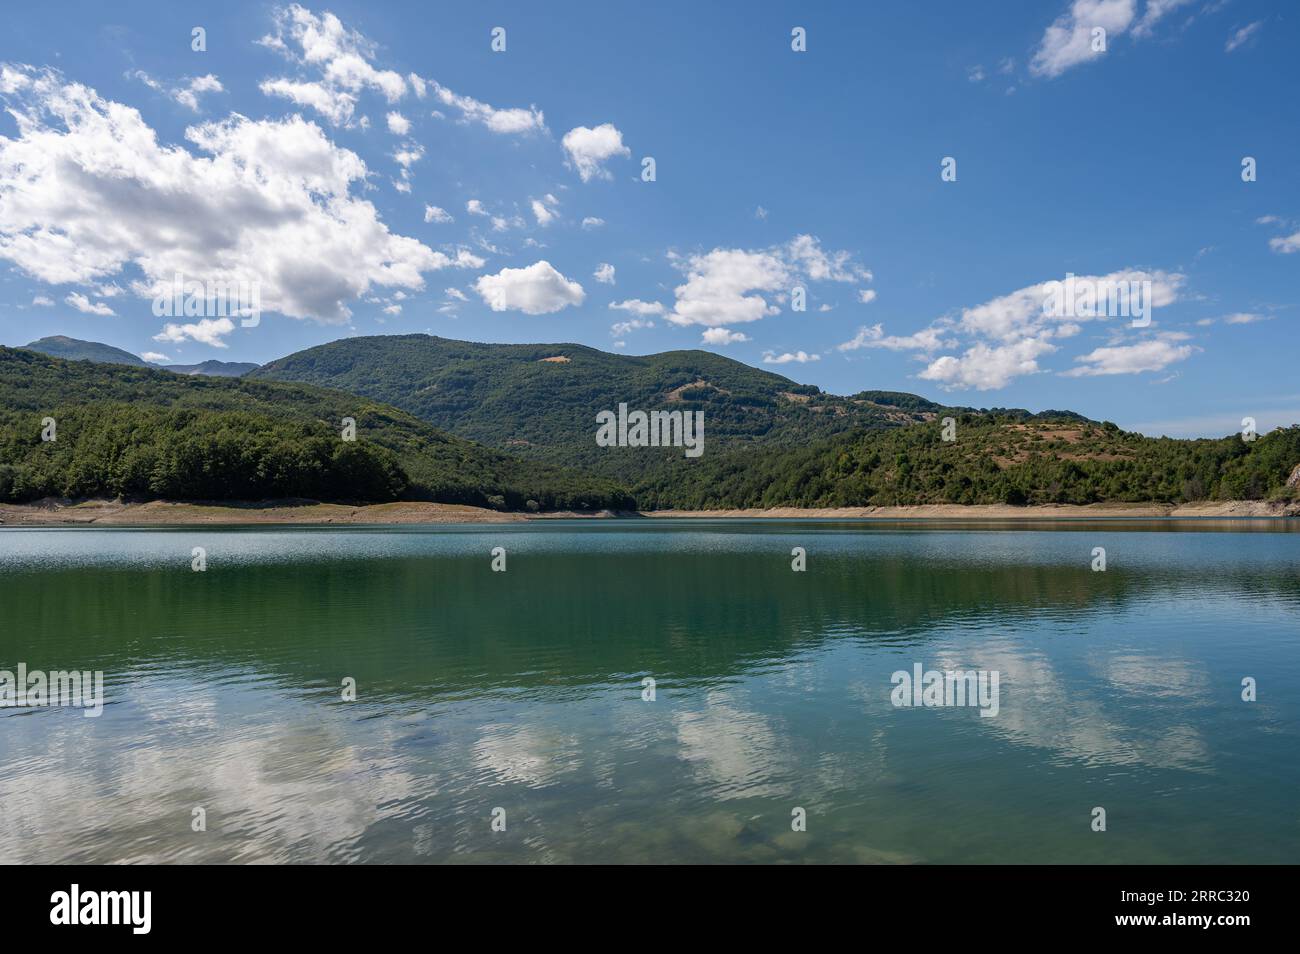 Le lac Montagna Spaccata est un petit lac artificiel situé aux confins sud des Abruzzes. Il est situé entièrement dans la province de l'Aquila, dans le m Banque D'Images